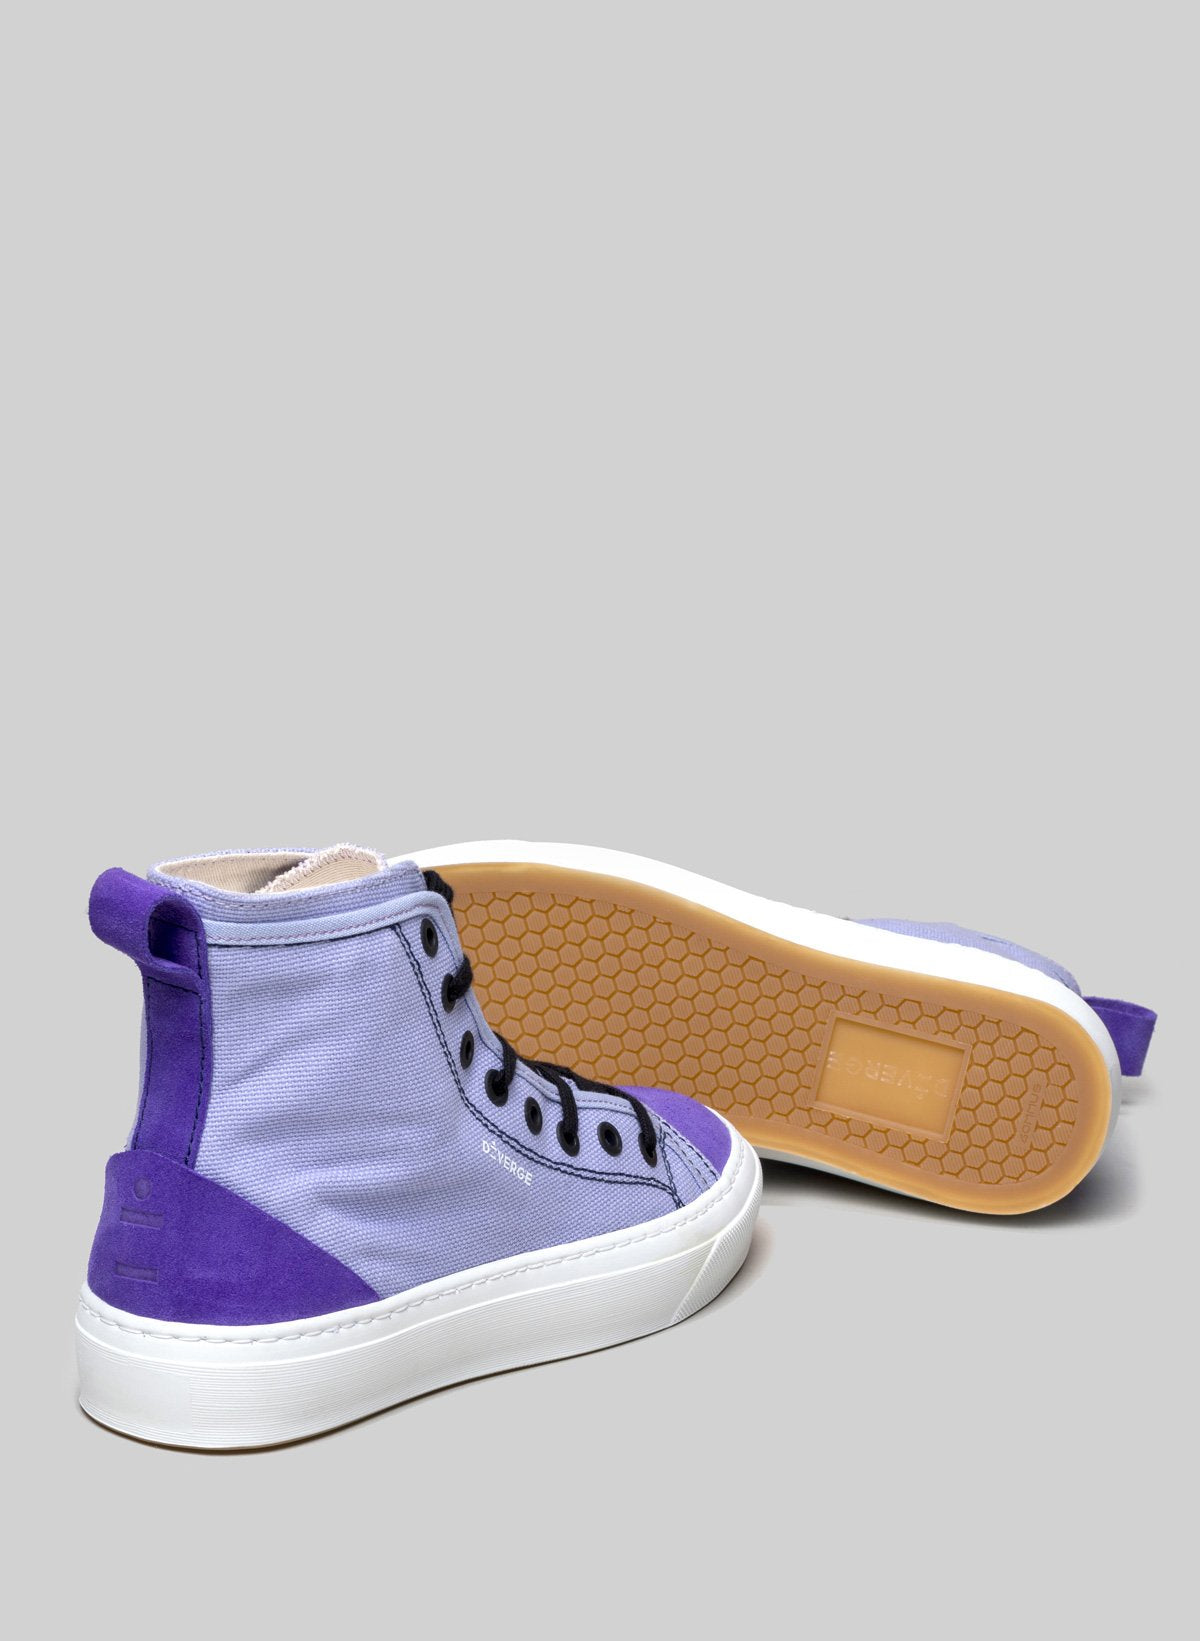 High top purple sneakers by Diverge, promouvoir l'impact social et les chaussures personnalisées à travers le projet imagine.